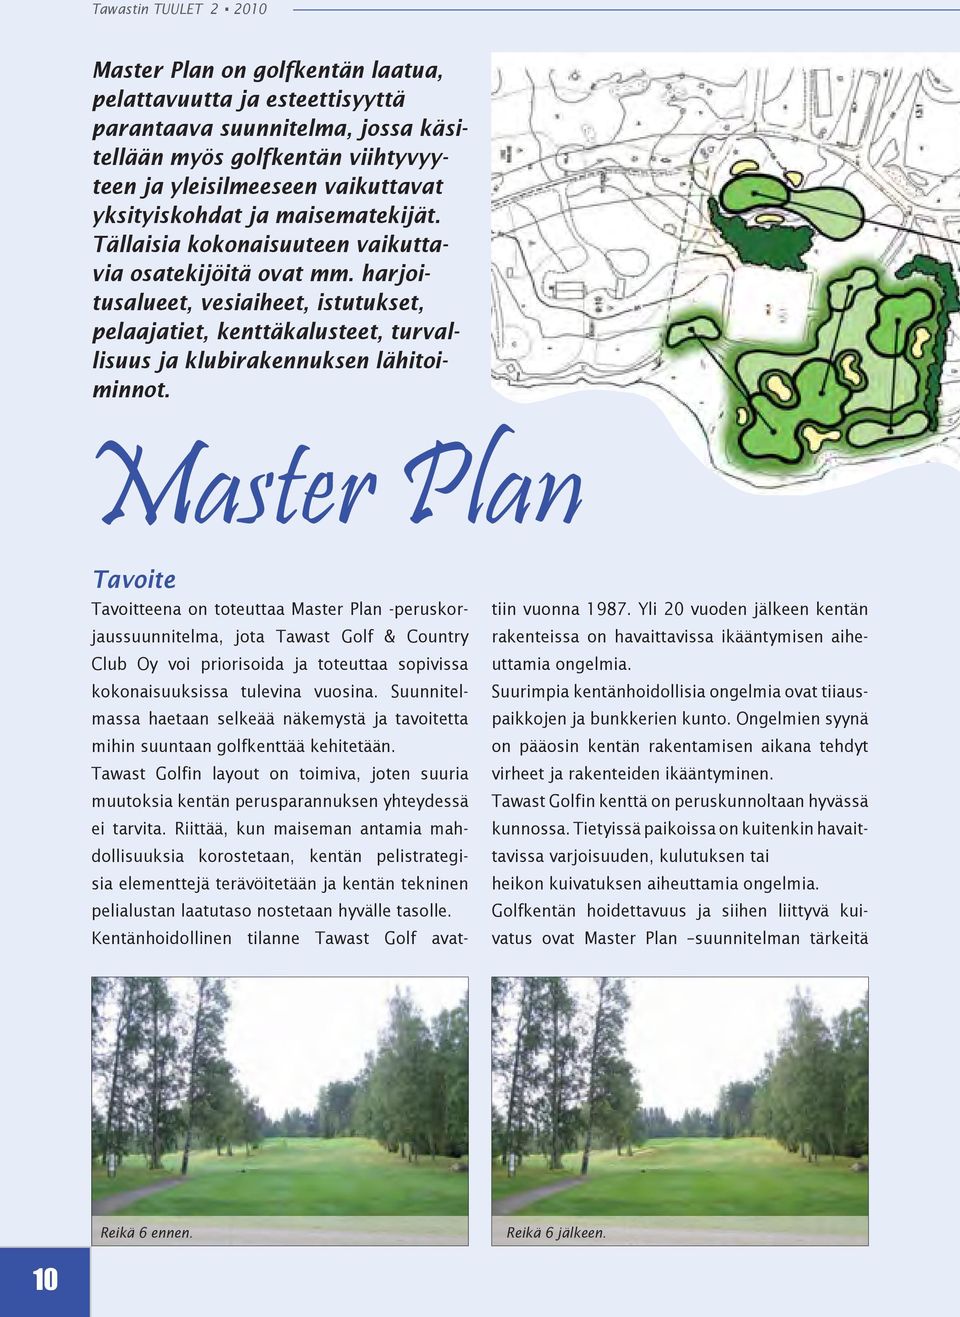 Master Plan Tavoite Tavoitteena on toteuttaa Master Plan -peruskorjaussuunnitelma, jota Tawast Golf & Country Club Oy voi priorisoida ja toteuttaa sopivissa kokonaisuuksissa tulevina vuosina.